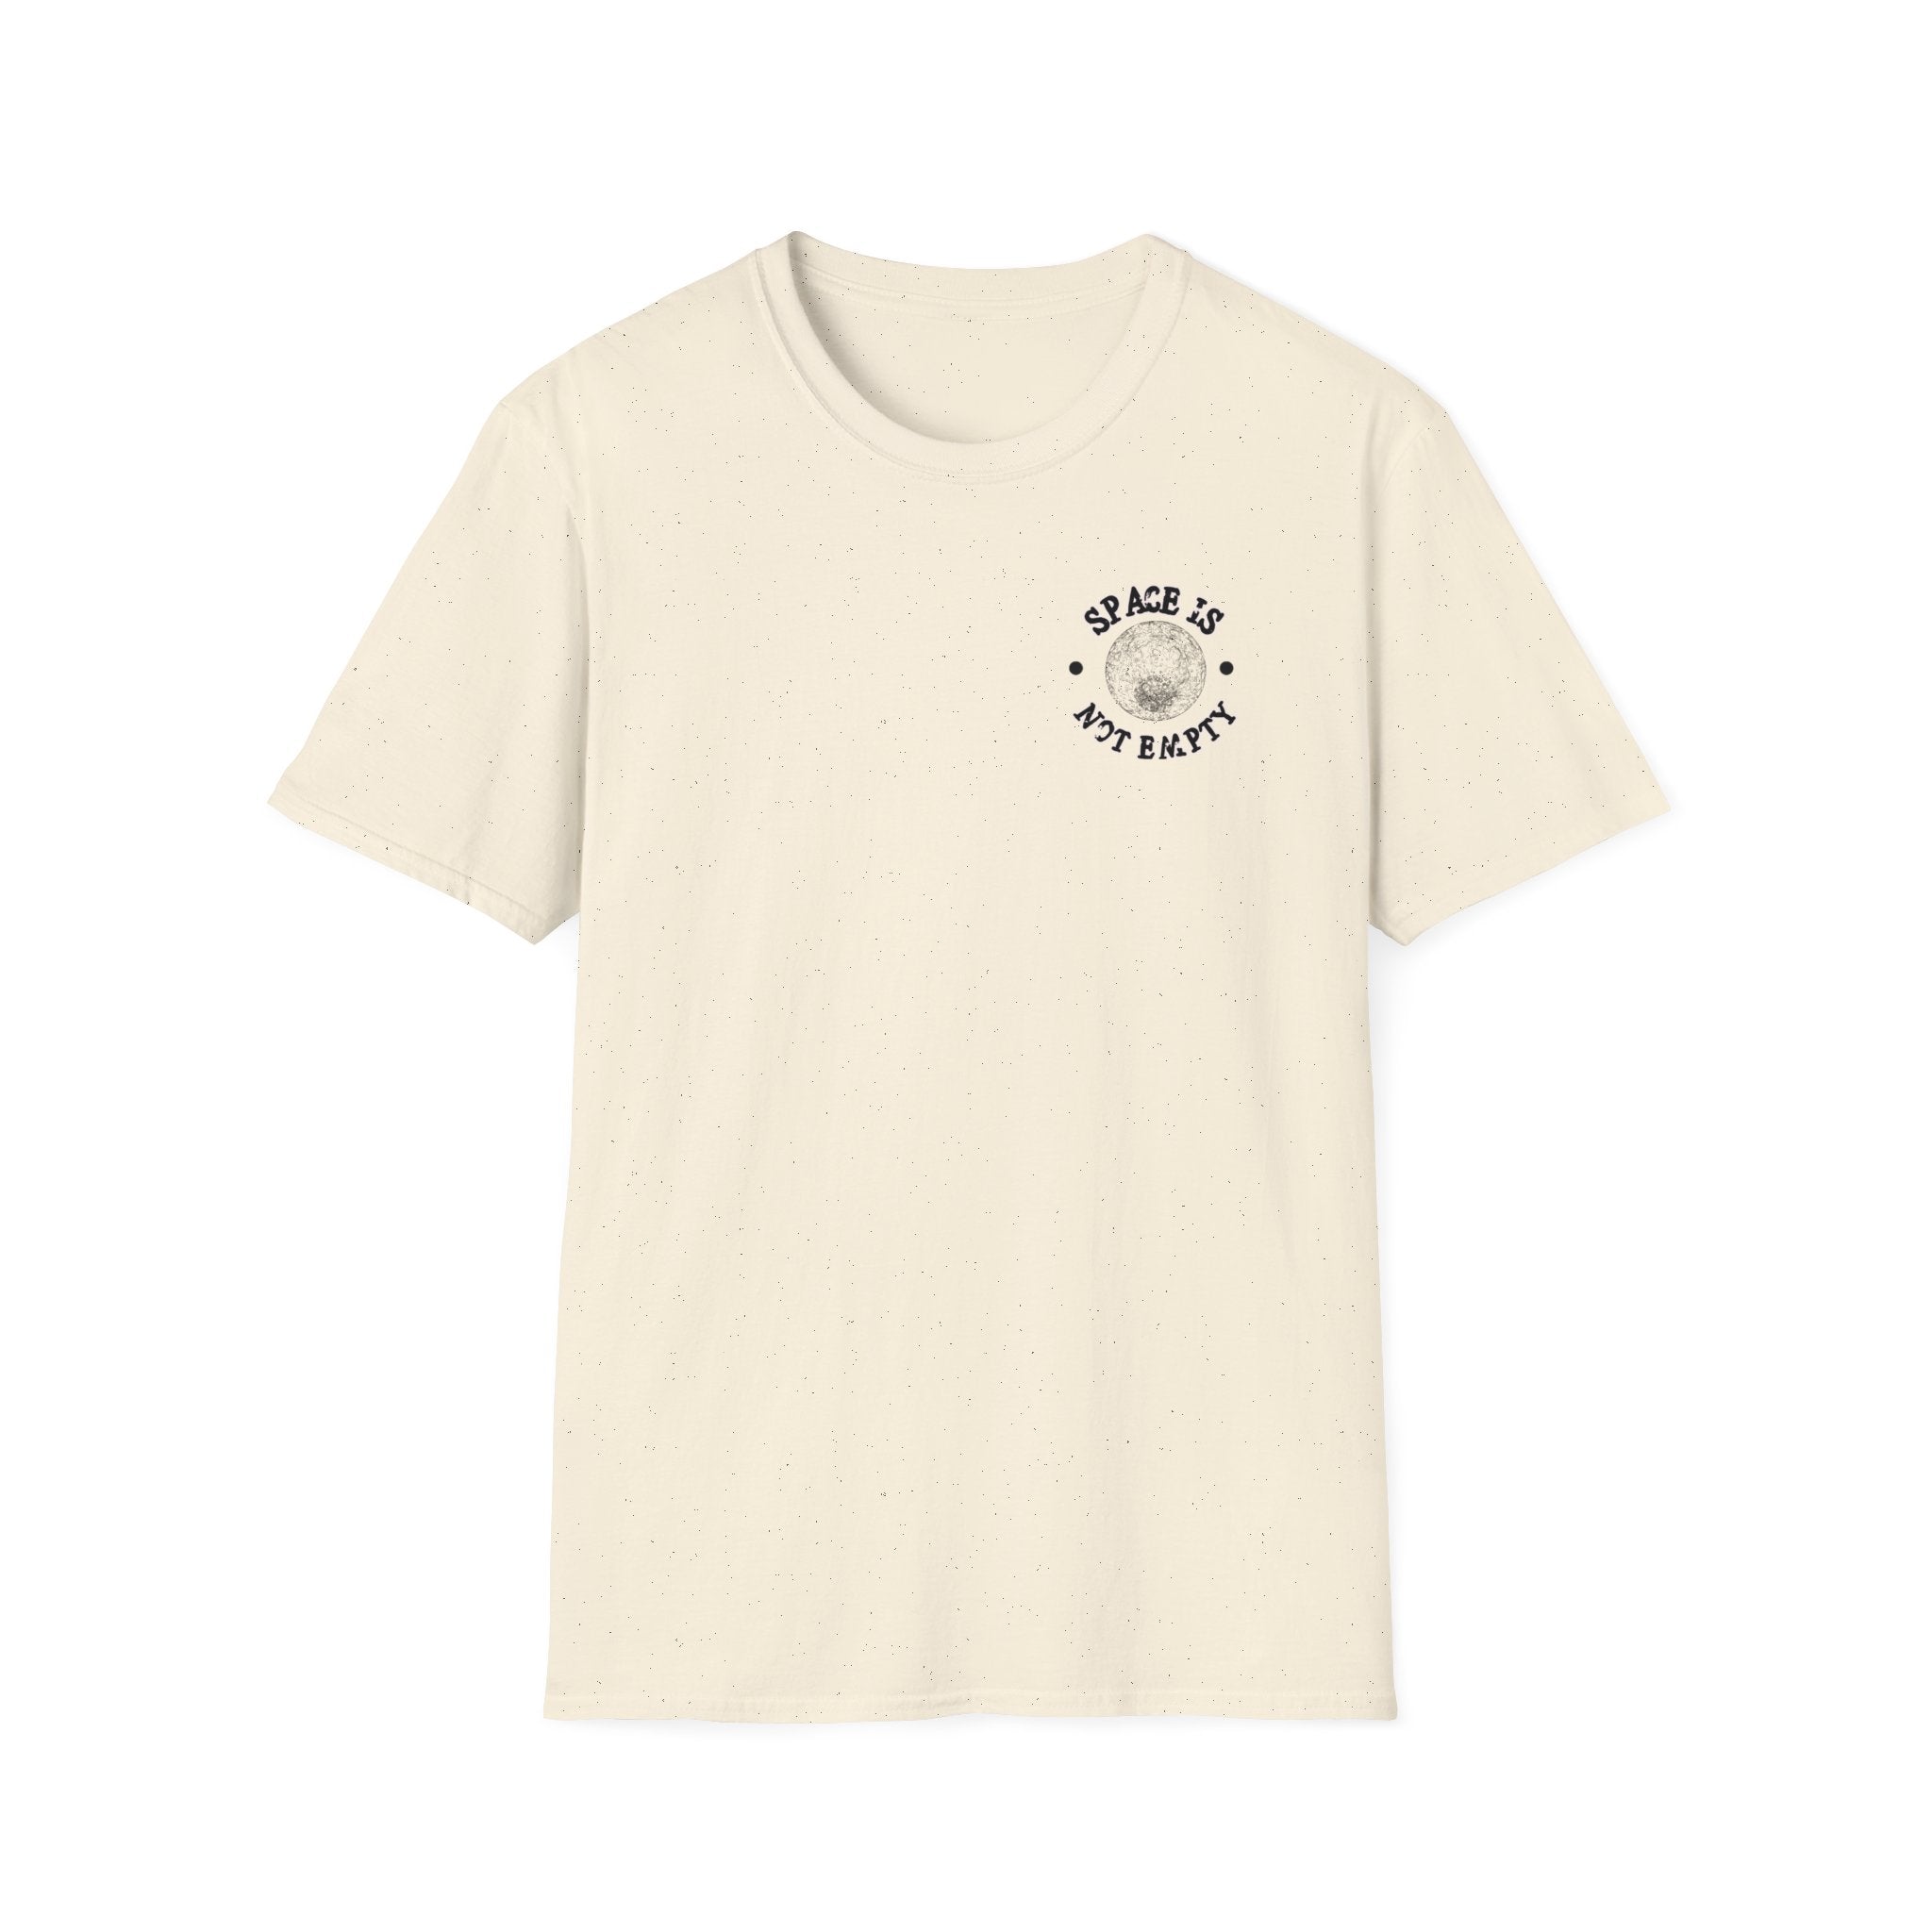 Deep Space Shuttle T-Shirt